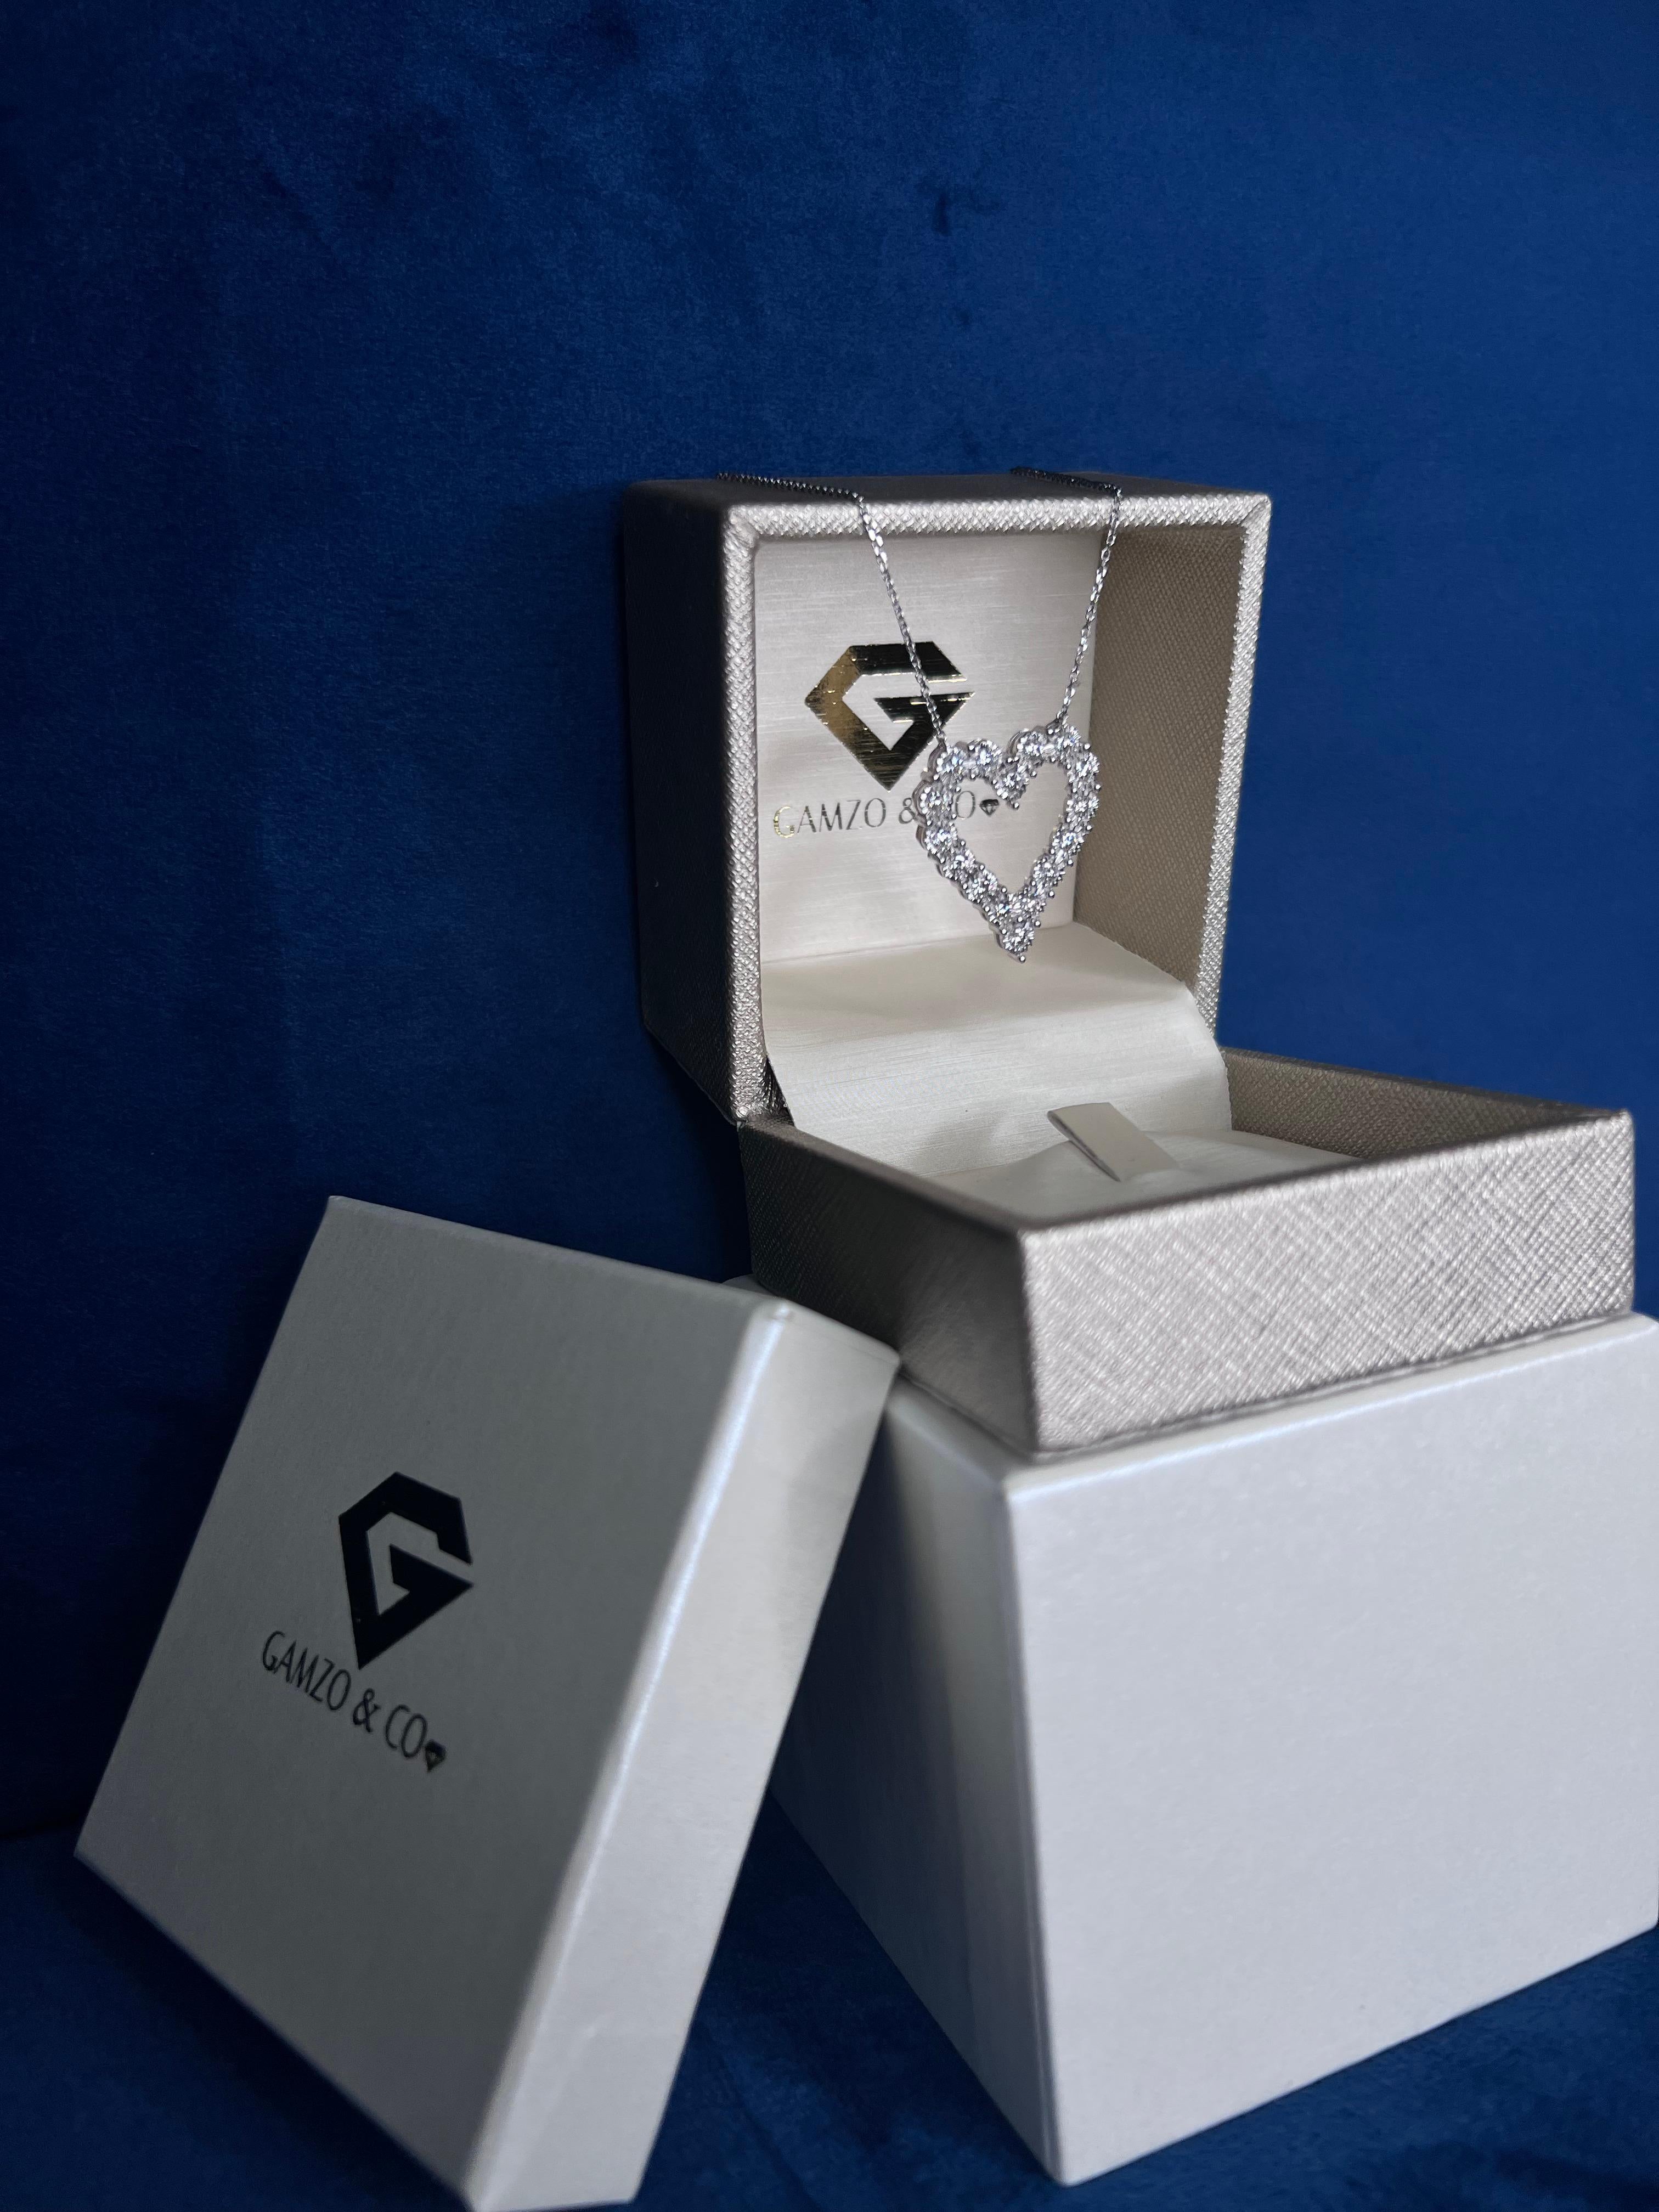 Diese Herz-Diamant-Halskette sorgt für einen niedlichen und modischen Trend-Look. 

Metall: 14k Gold
Diamant-Schliff: Rund
Diamant Karat gesamt: 0.75 Karat
Diamant Reinheit: VS
Diamant-Farbe: F
Länge der Halskette: 18 Zoll
Farbe: Weißgold
Im